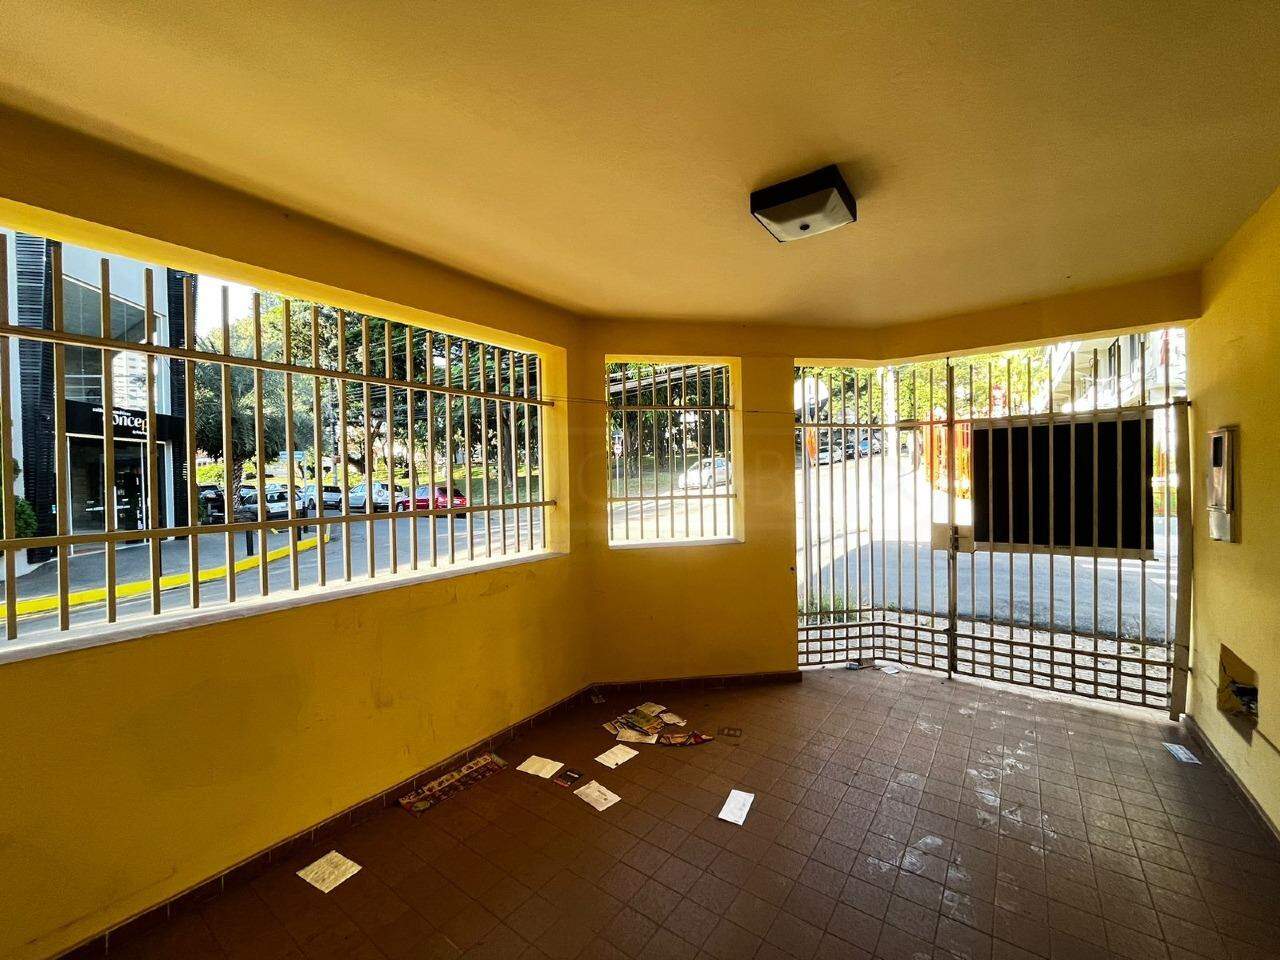 Casa à venda, 4 quartos, 1 vaga, no bairro Cidade Alta em Piracicaba - SP